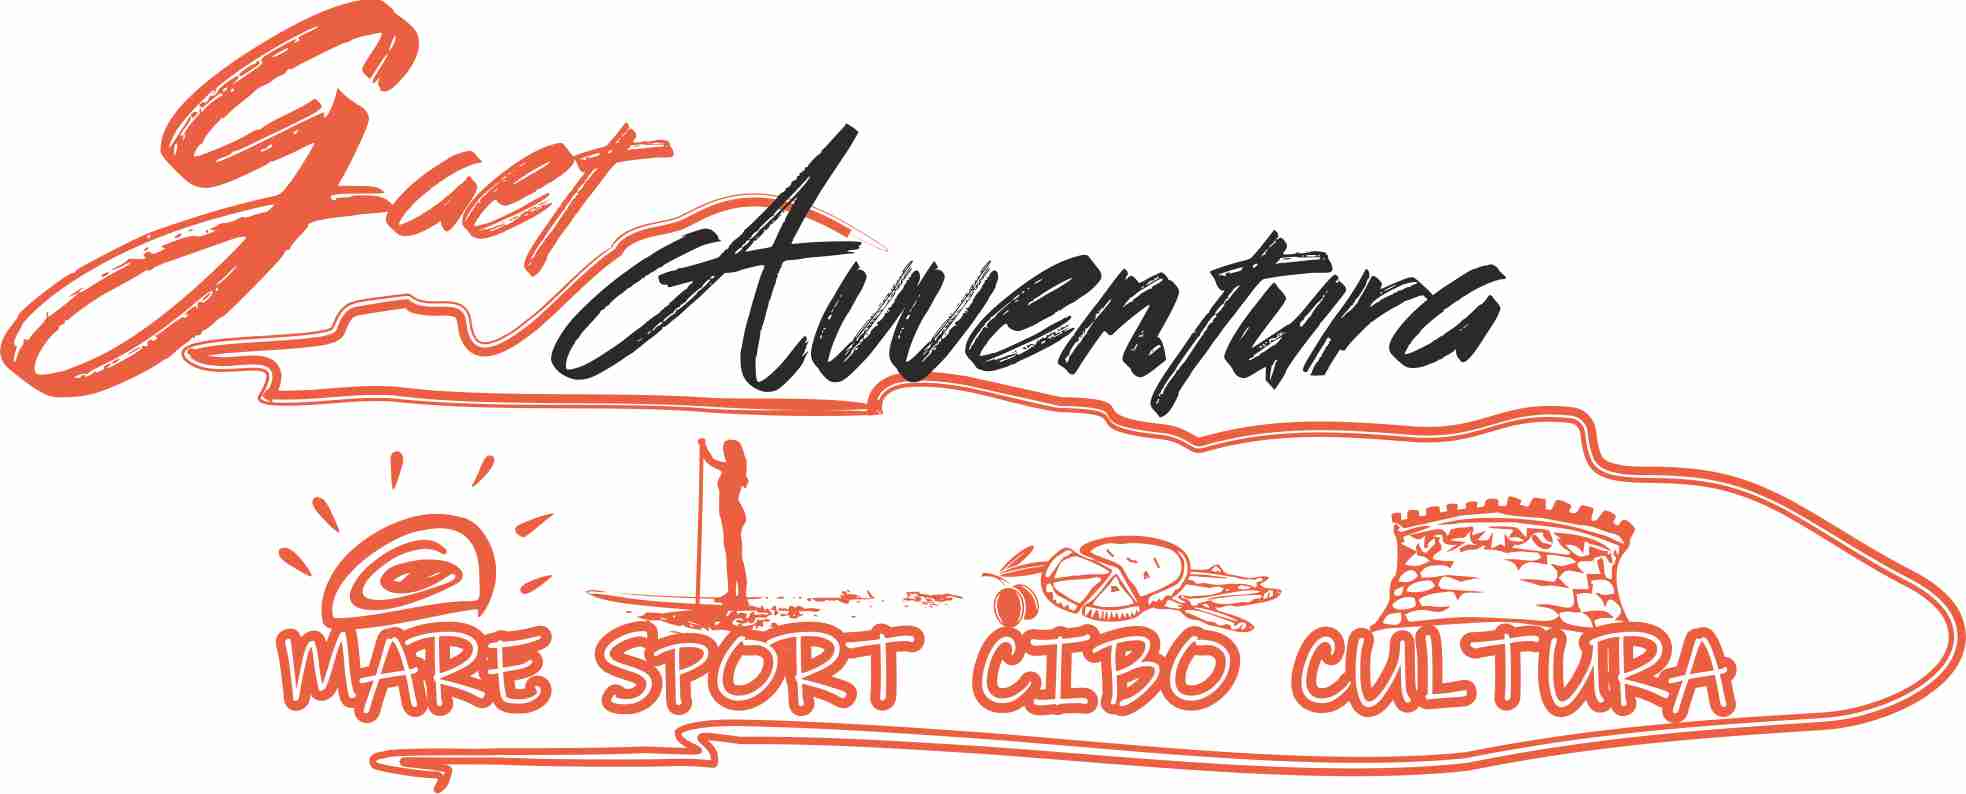 Gaetavventura, mare, sport, cibo, cultura. Il primo blog tour della città di Gaeta.